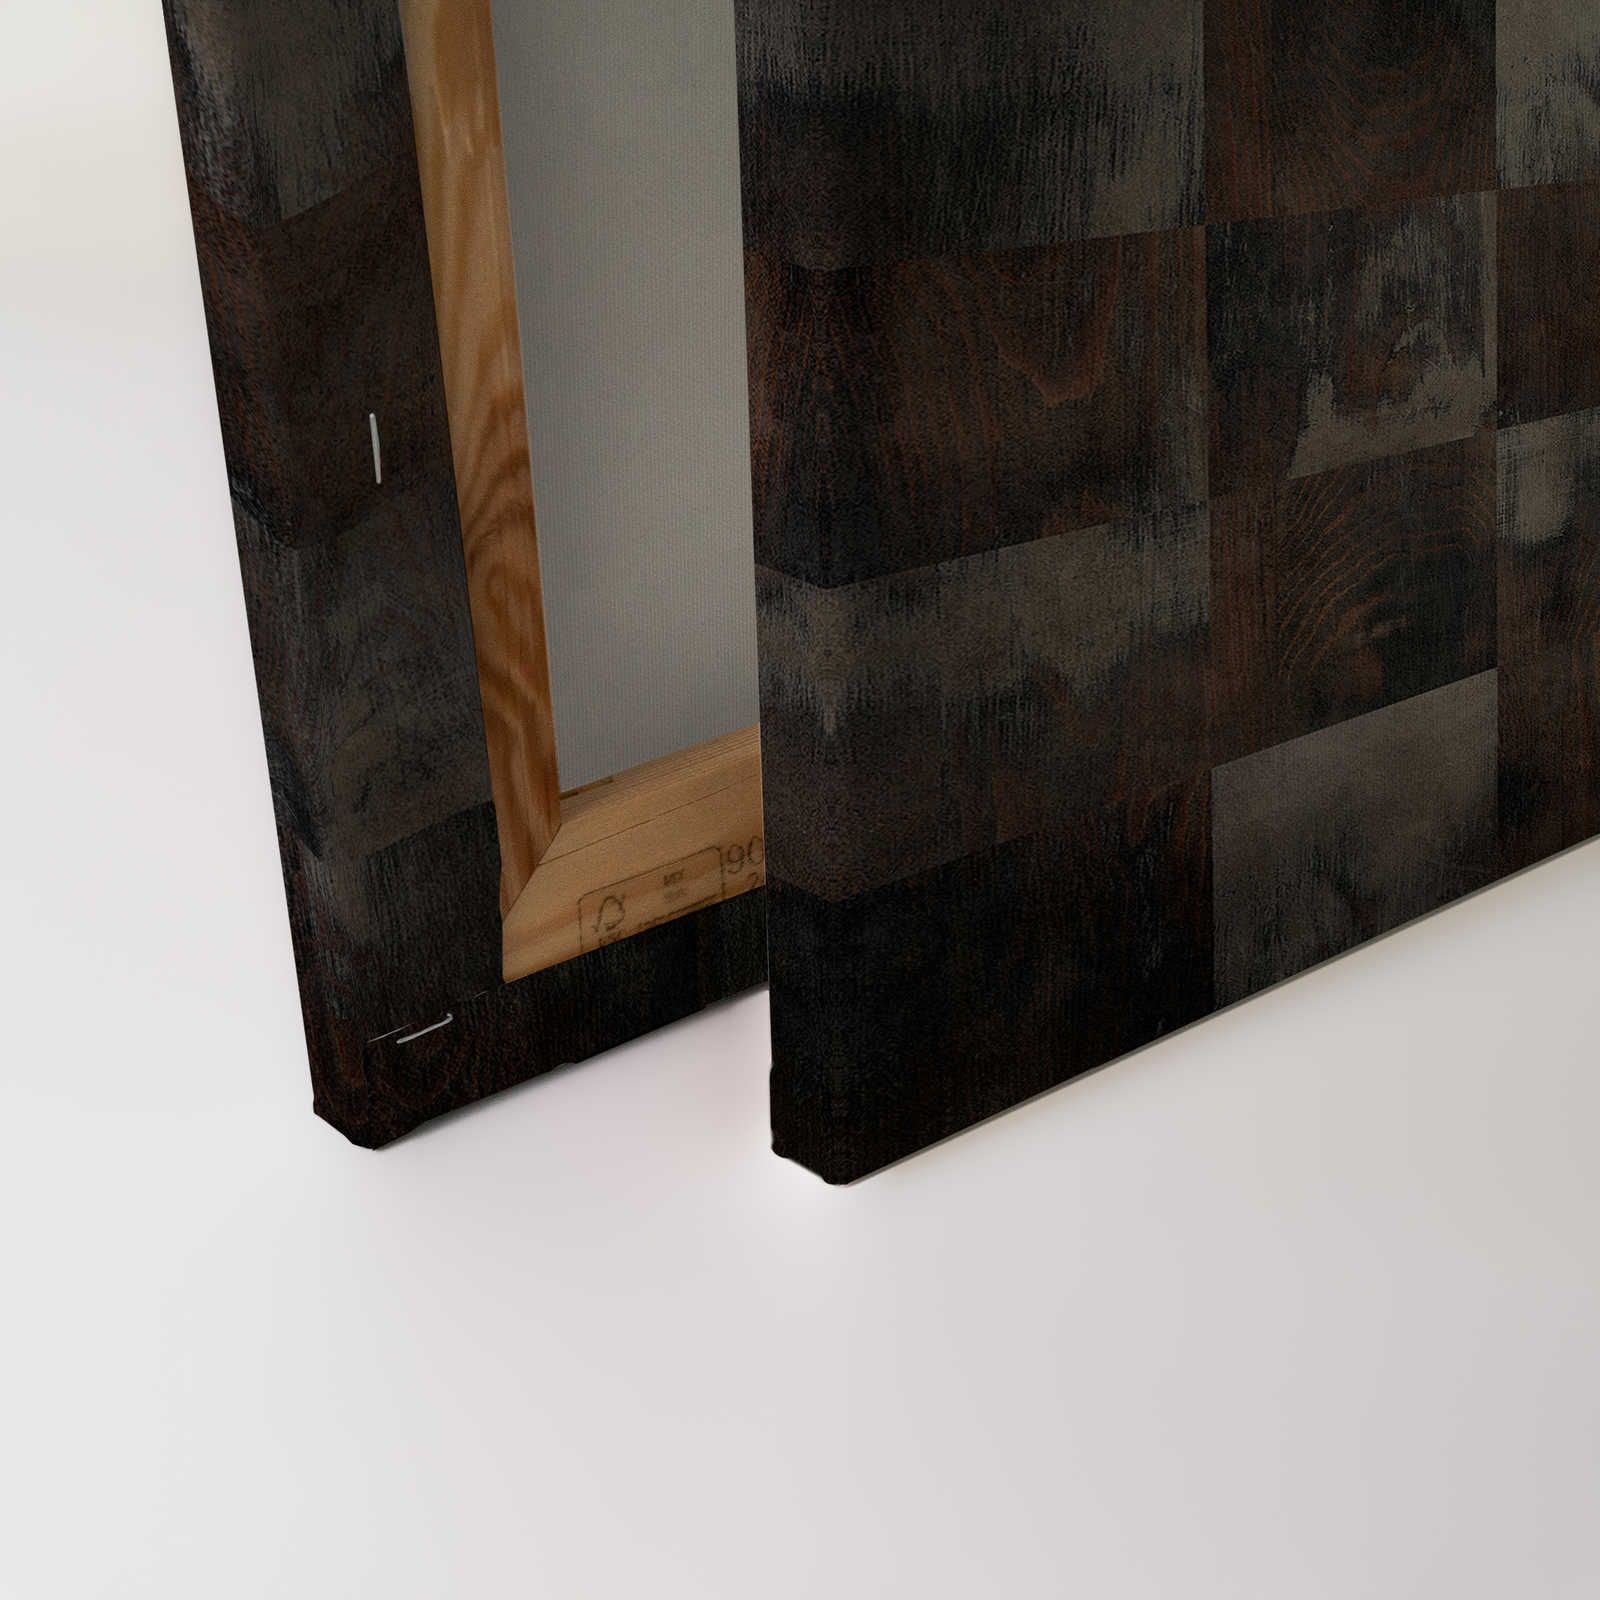             Factory 2 - Toile aspect bois motif échiquier usé - 0,90 m x 0,60 m
        